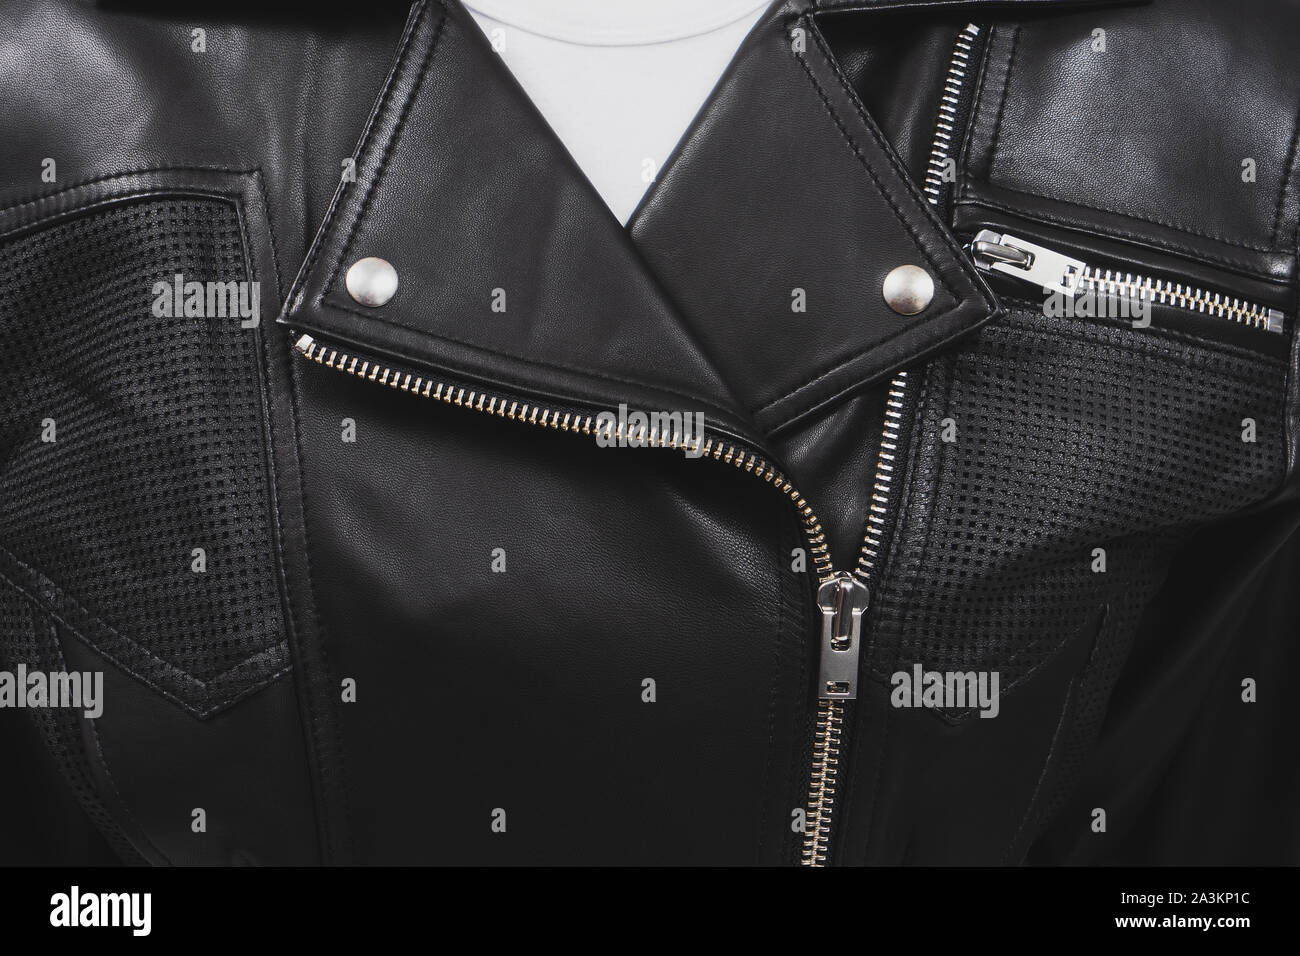 La chaqueta de cuero negro con elementos perforados. Cierres metálicos, cierres y botones. Ropa clásica para el ciclista. Acercamiento detallado. Camiseta blanca. Foto de stock